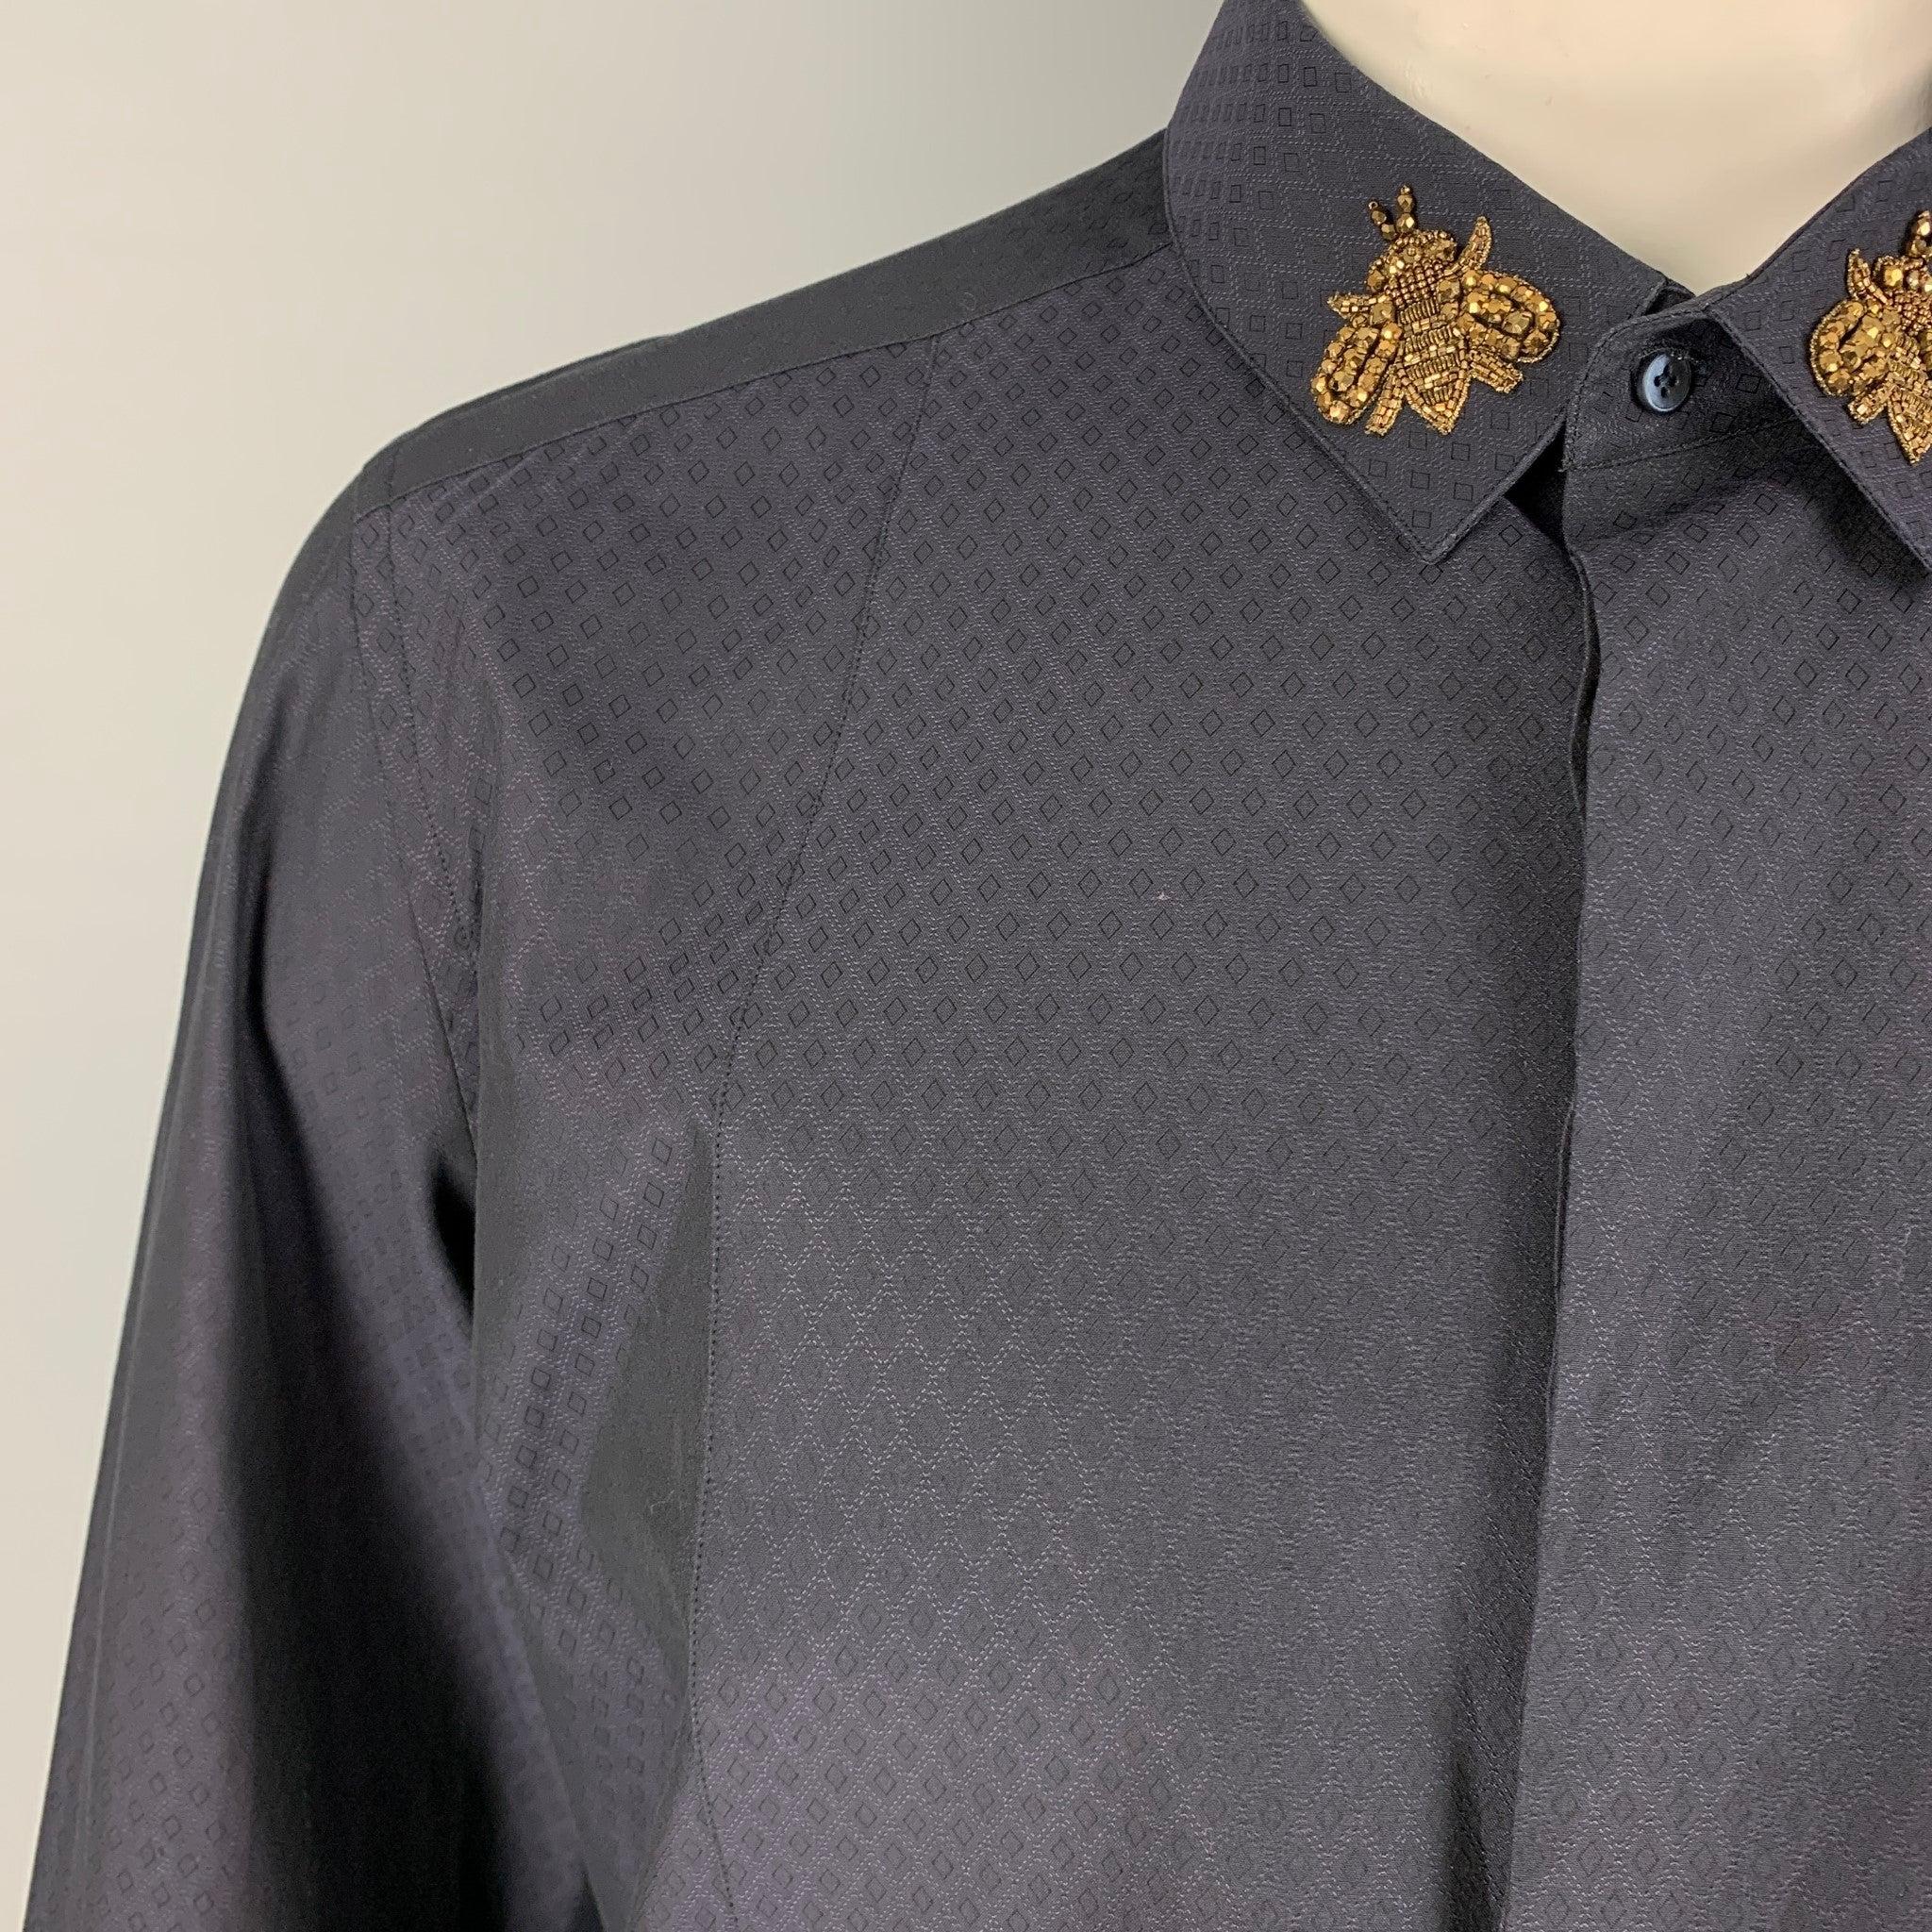 Das langärmelige Hemd von DOLCE & GABBANA besteht aus Baumwolle mit Rautenmuster in Marineblau und verfügt über eine 